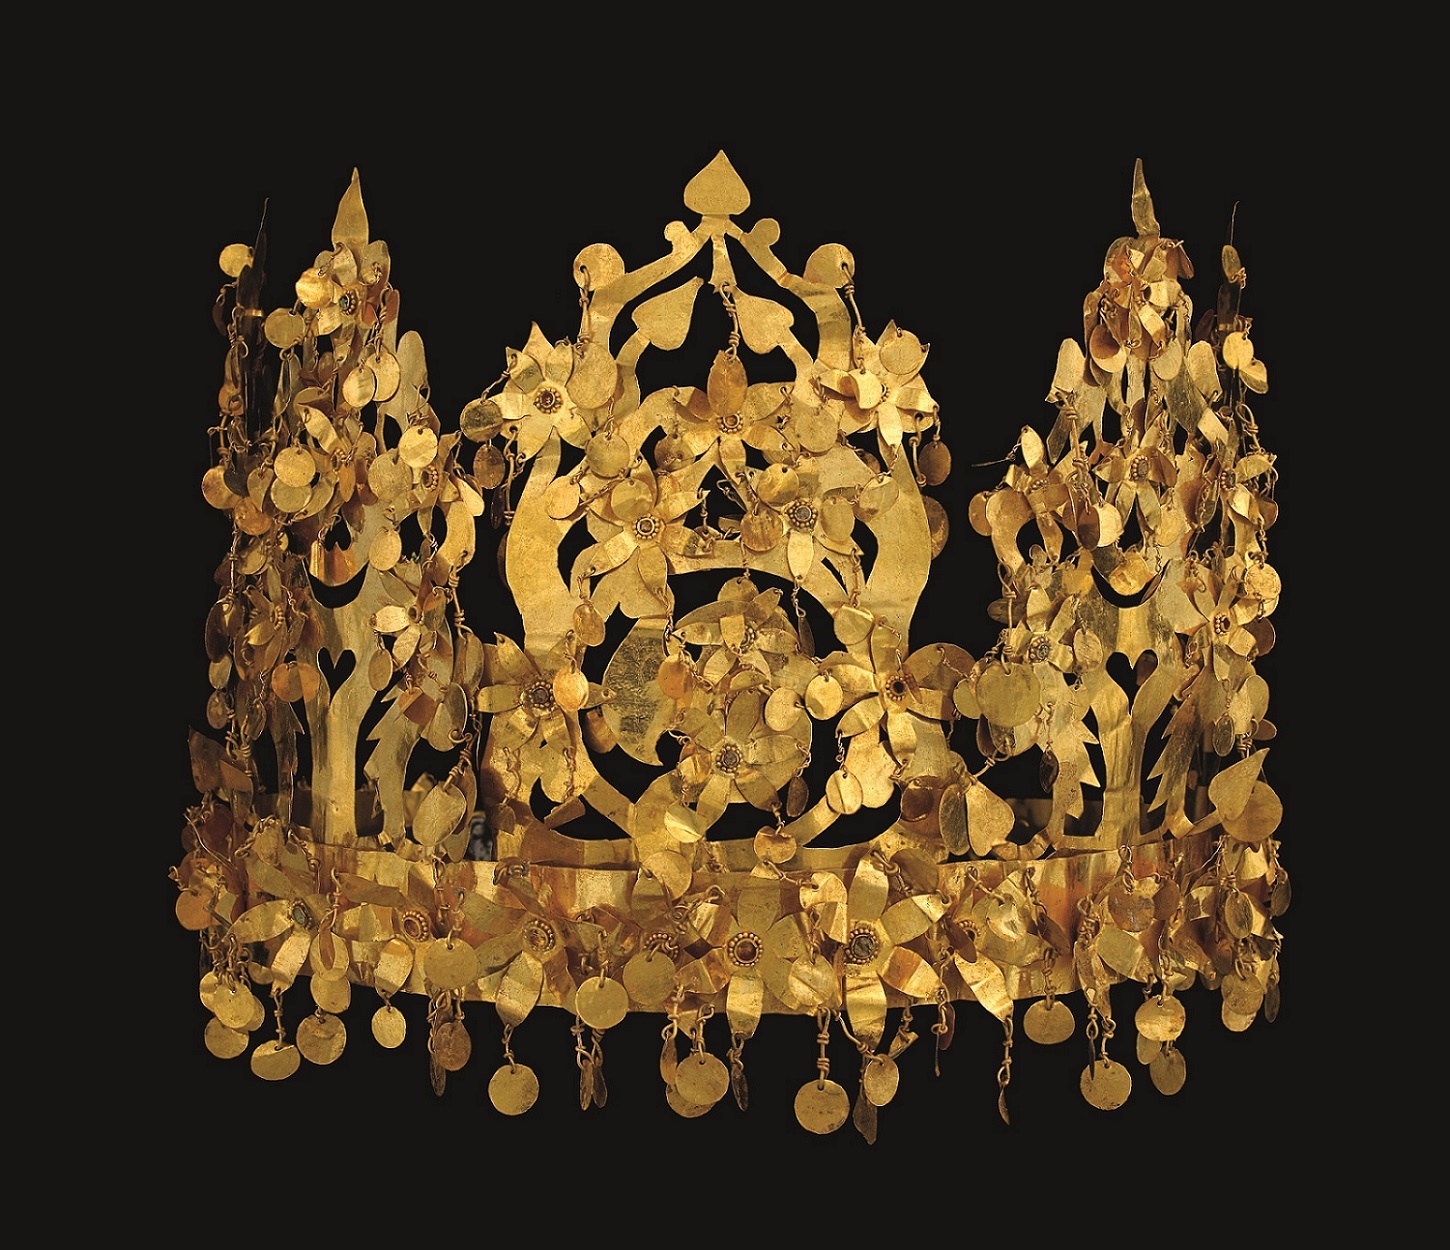 「冠」 1世紀 ティリヤ・テペ出土、素材：金・トルコ石 所蔵元：アフガニスタン国立博物館蔵